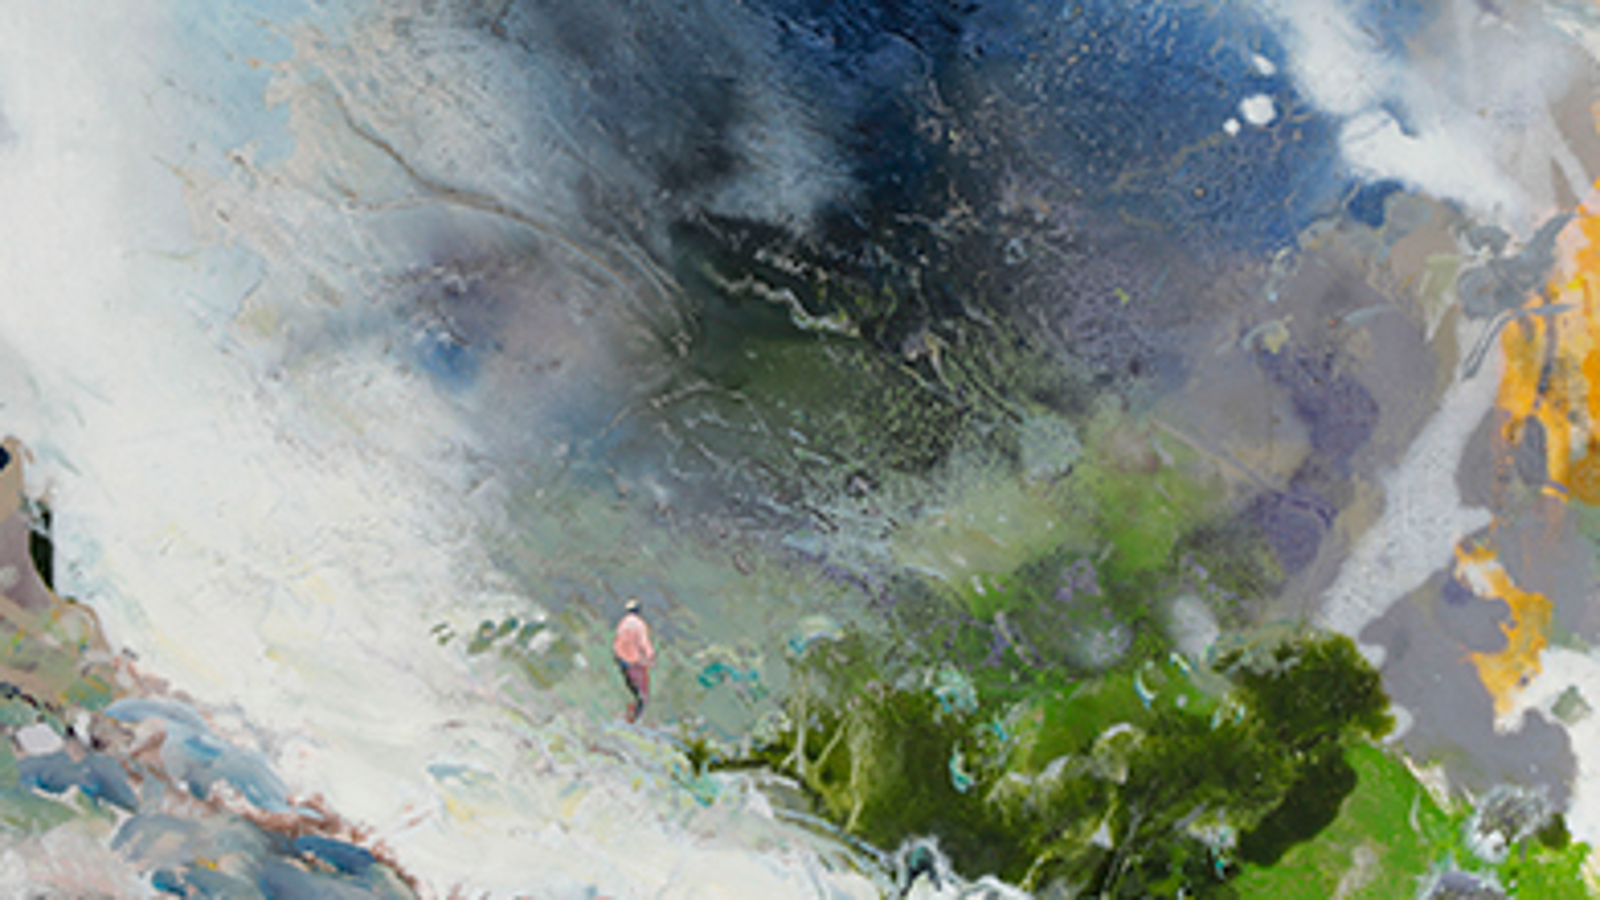 Kuvassa on osa Tuomo Saalin taulua, jossa yläosassa on sinisen eri sävyistä taivasmaista pilveä. Alhaalla mies kulkee tunturin rinnettä alaspän ja oikealla on rinteen alla vihreää metsikköä.  Taulun sävy on utumainen.